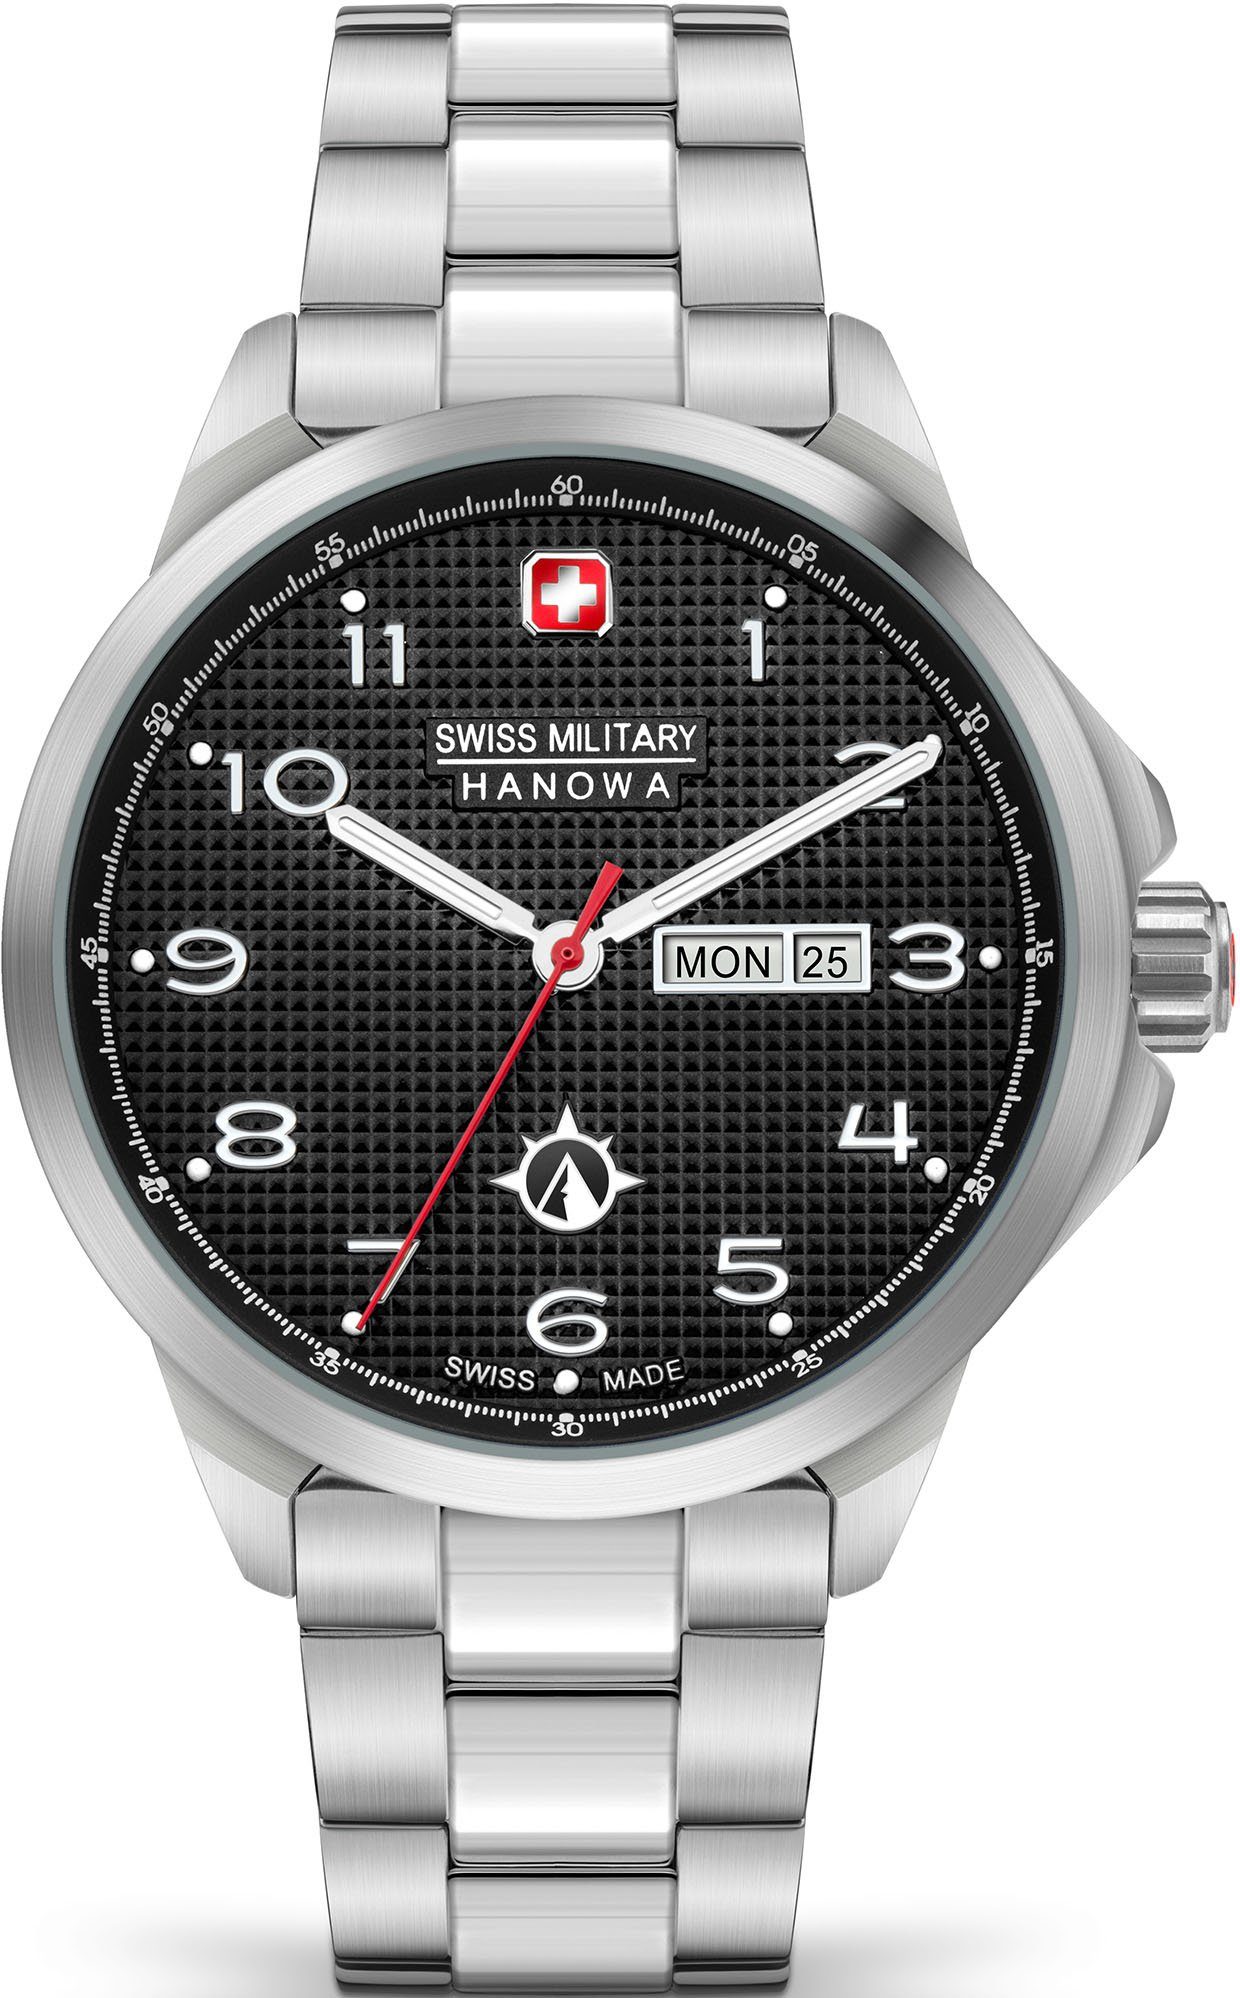 Swiss Military Hanowa Schweizer Uhr PUMA, SMWGH2100303, Quarzuhr, Armbanduhr, Herrenuhr, Swiss Made, Datum, Saphirglas, analog